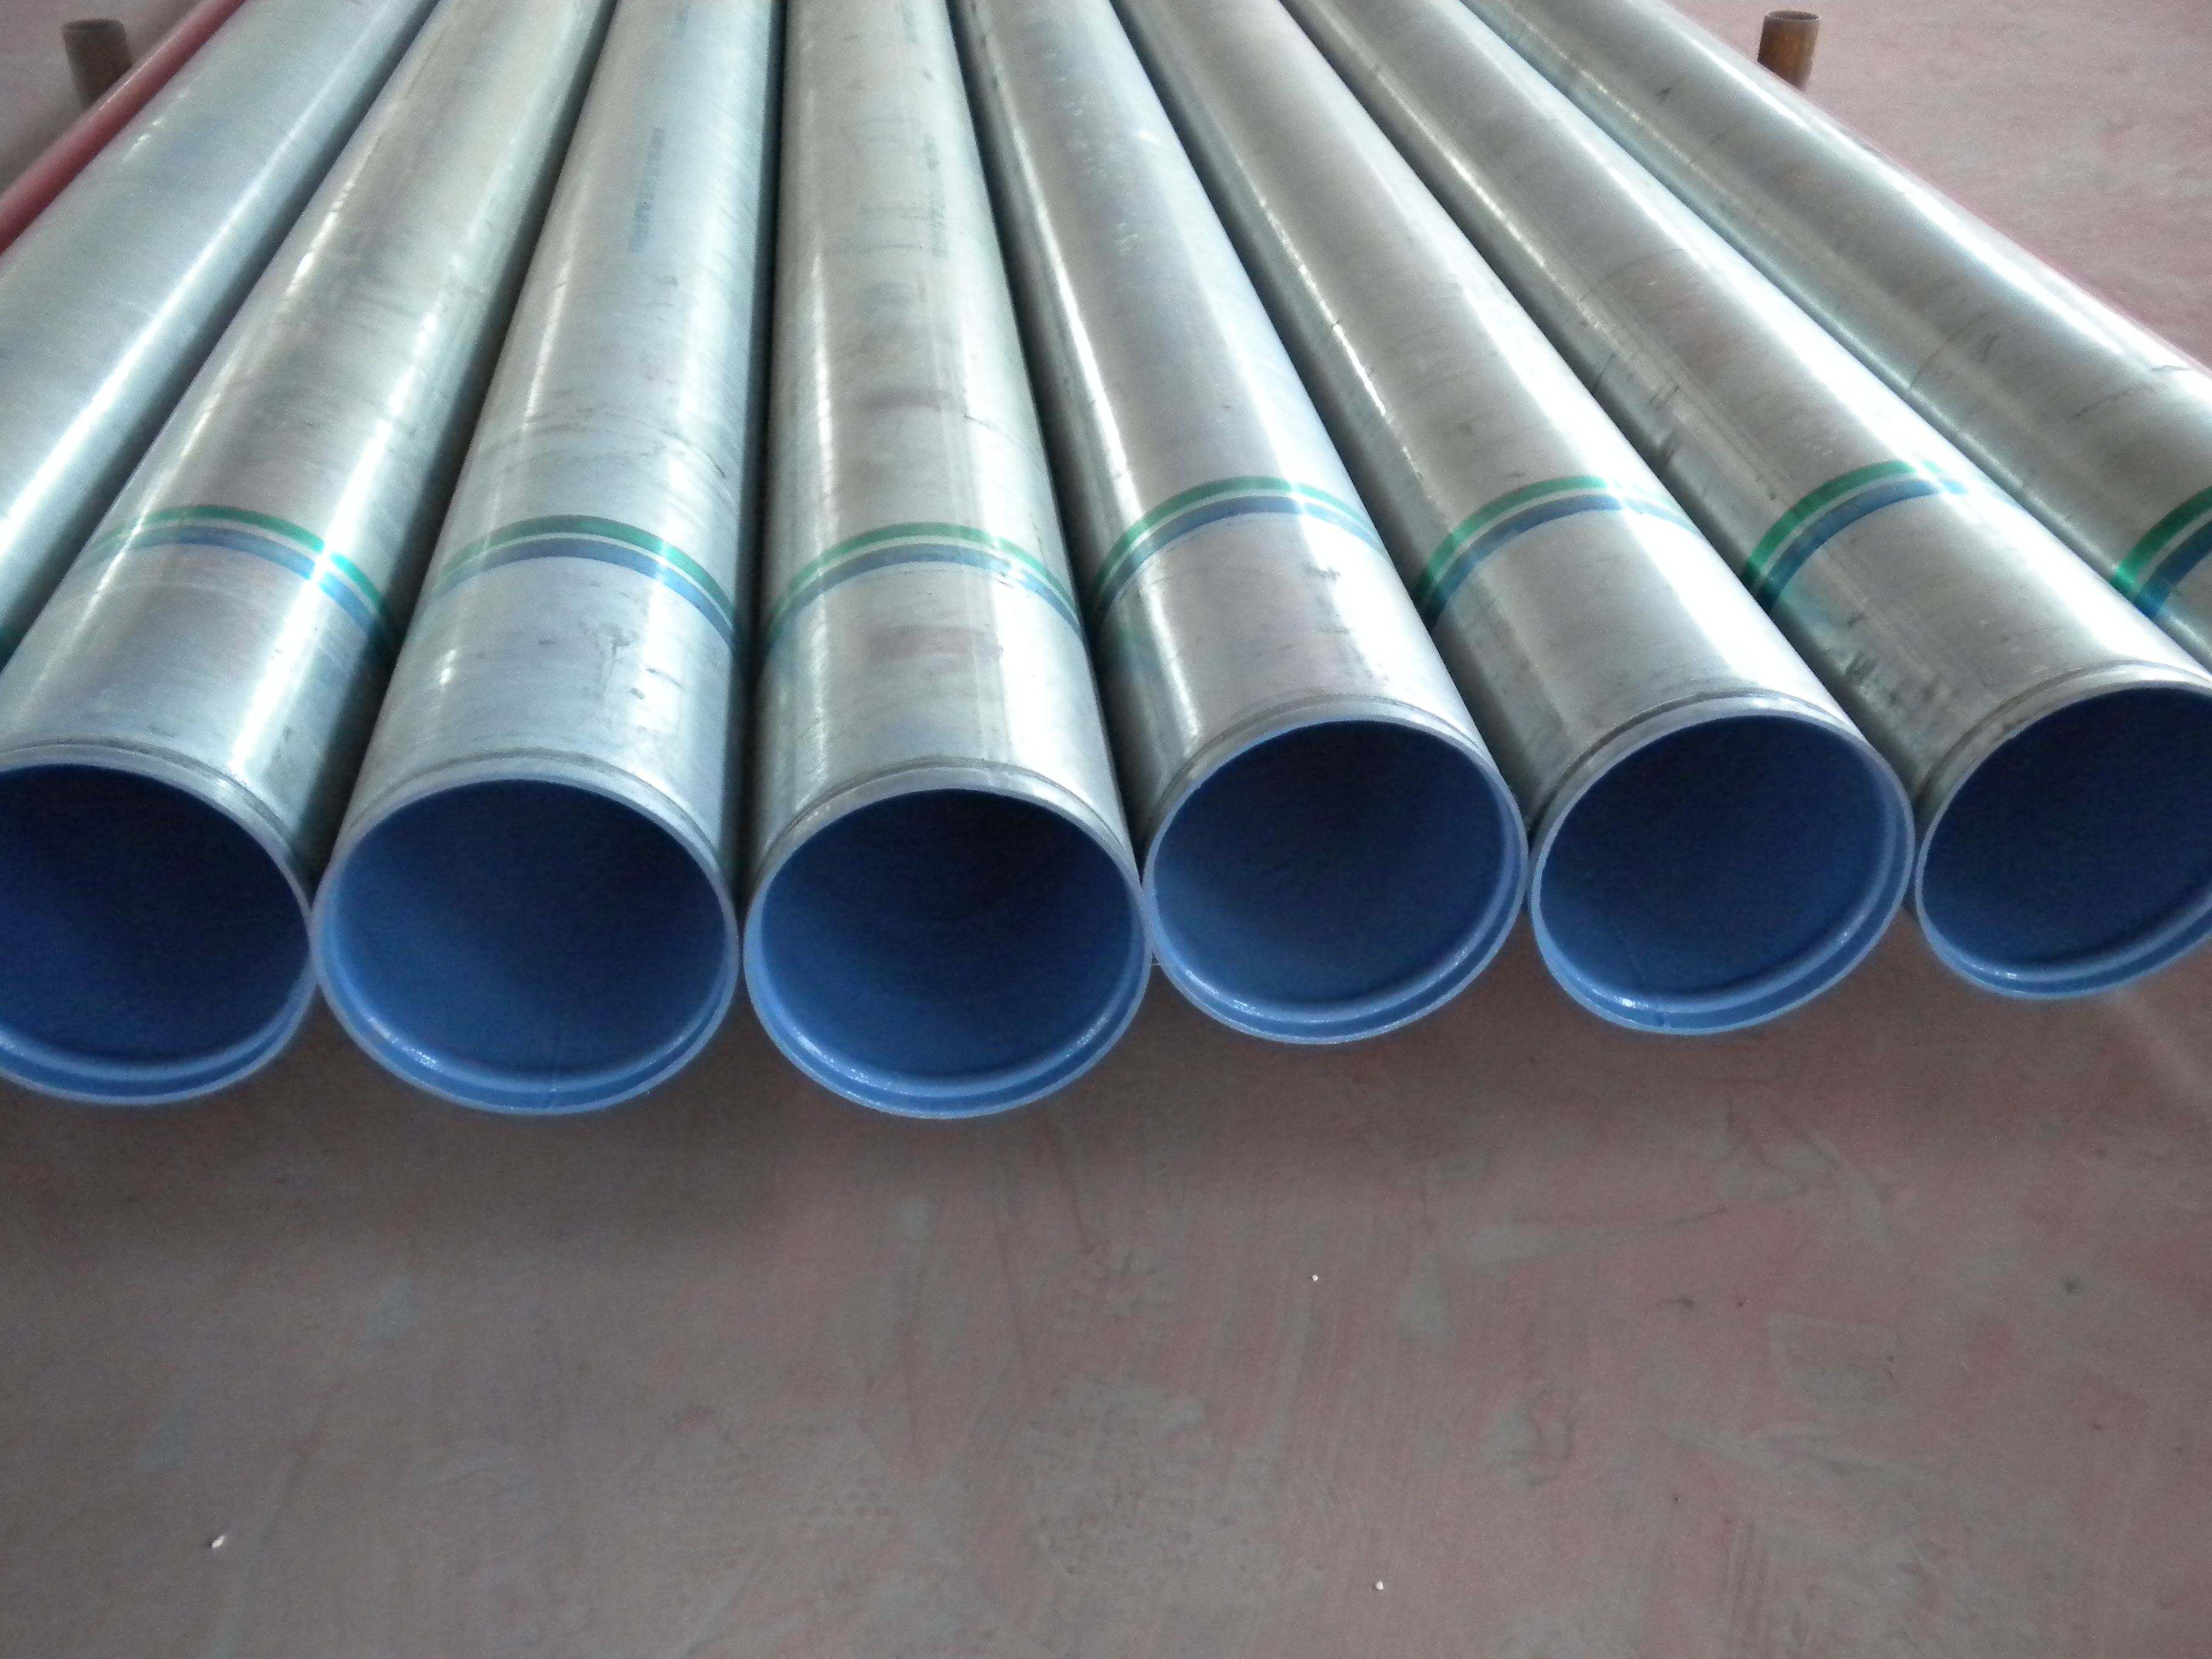 DN南县消防排水管道涂塑钢管厂家价格产品介绍